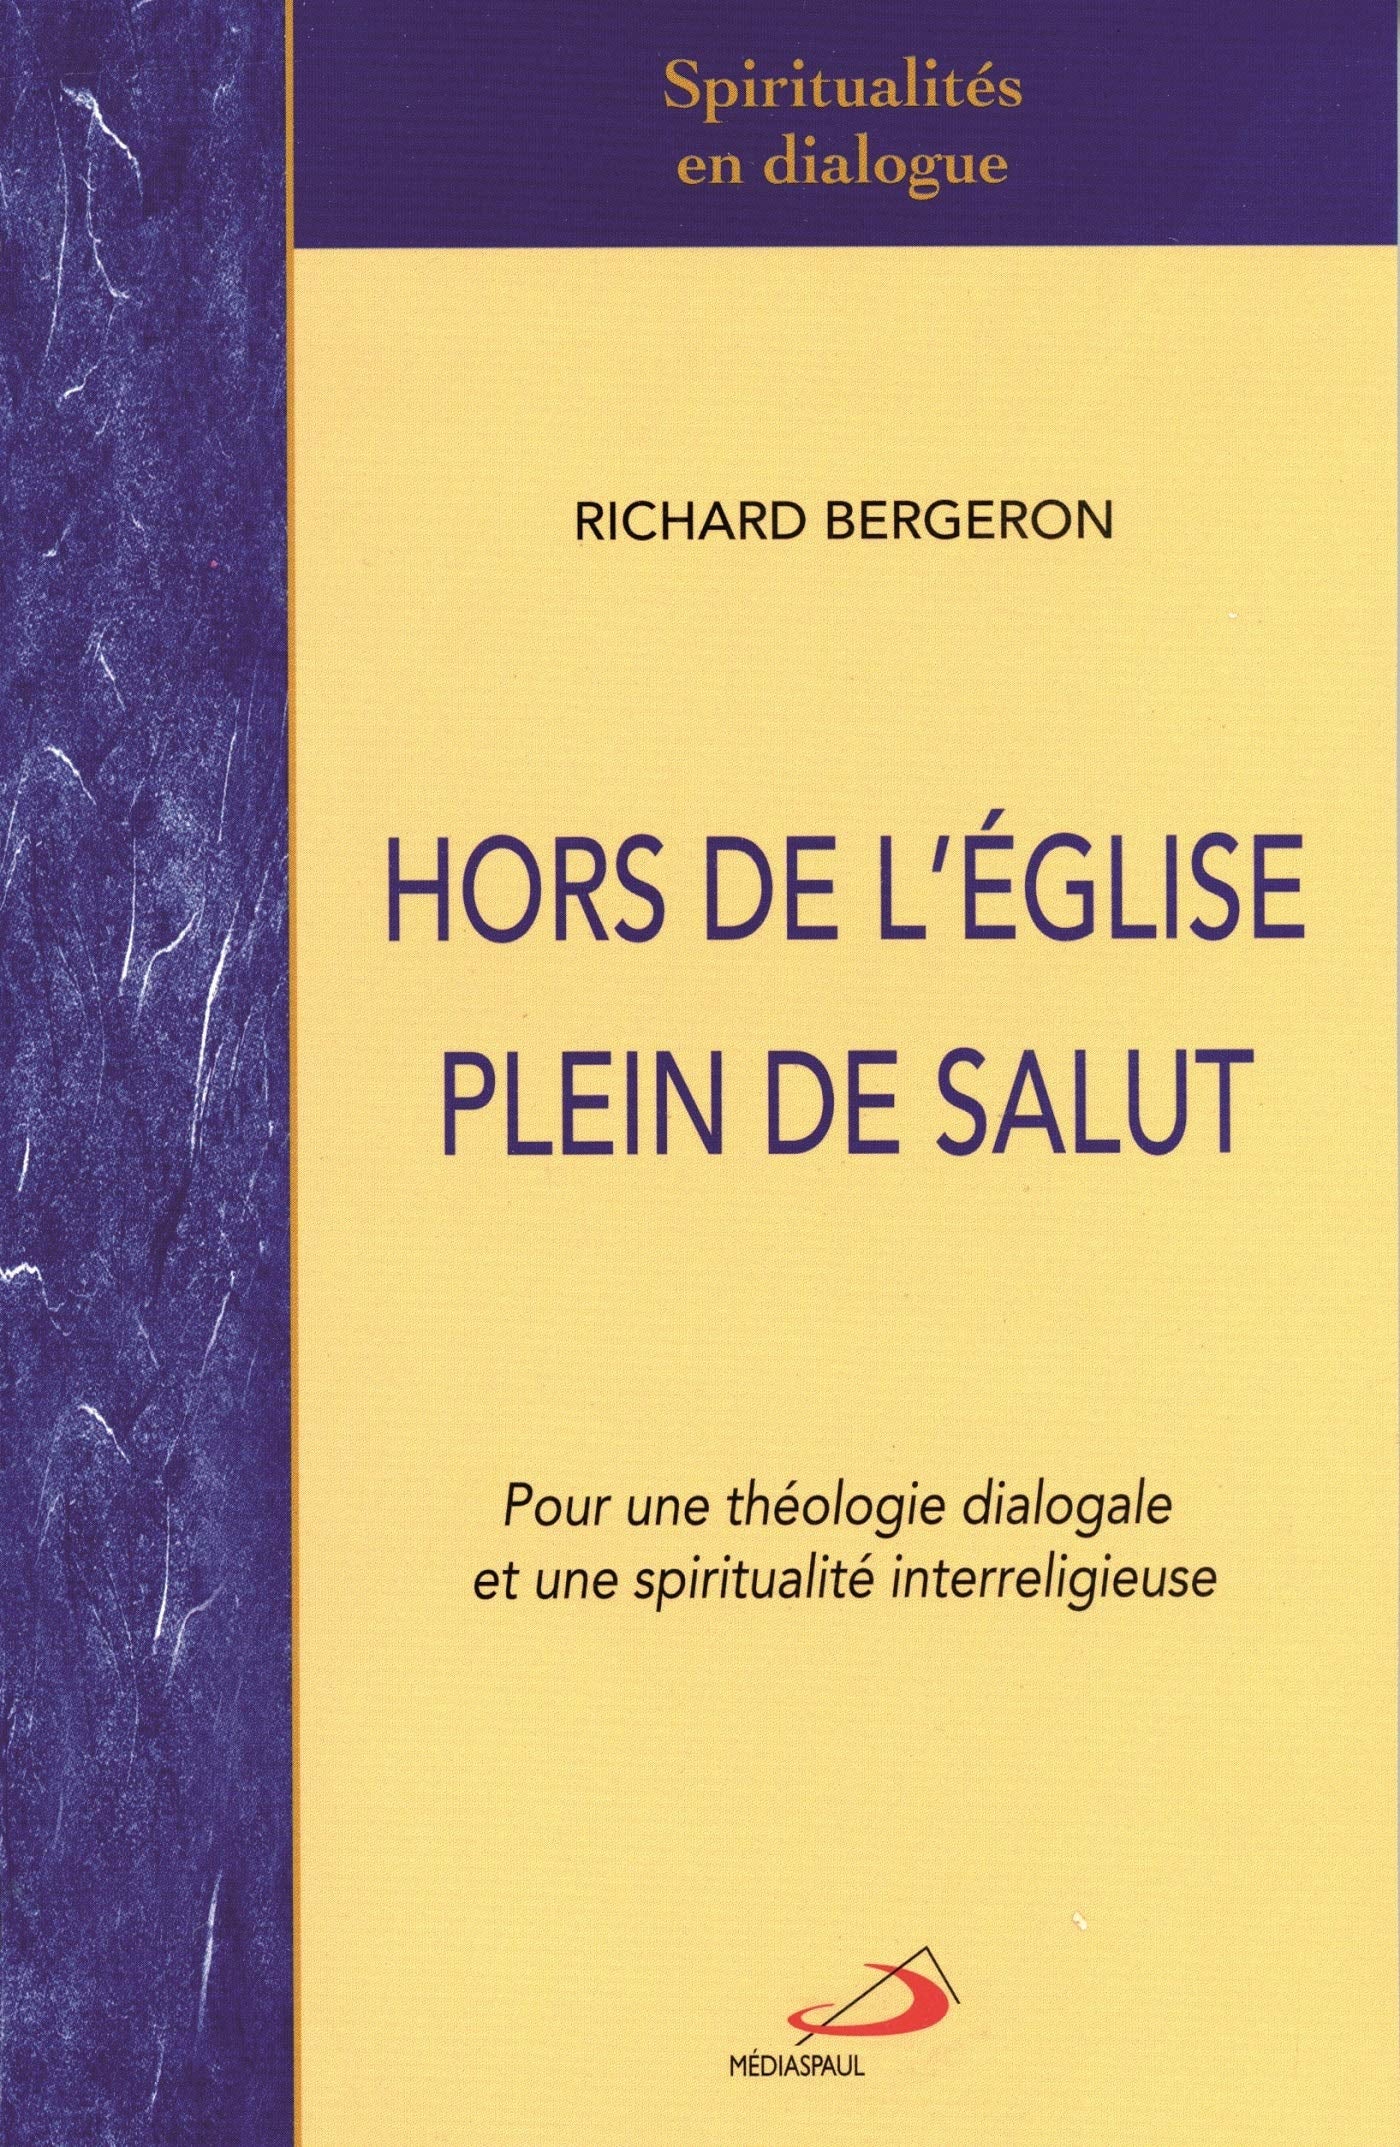 Livre ISBN 2894206135 Hors de l'Église plein de salut : pour une théologie dialogale et une spiritualité interreligieuse (Richard Bergeron)